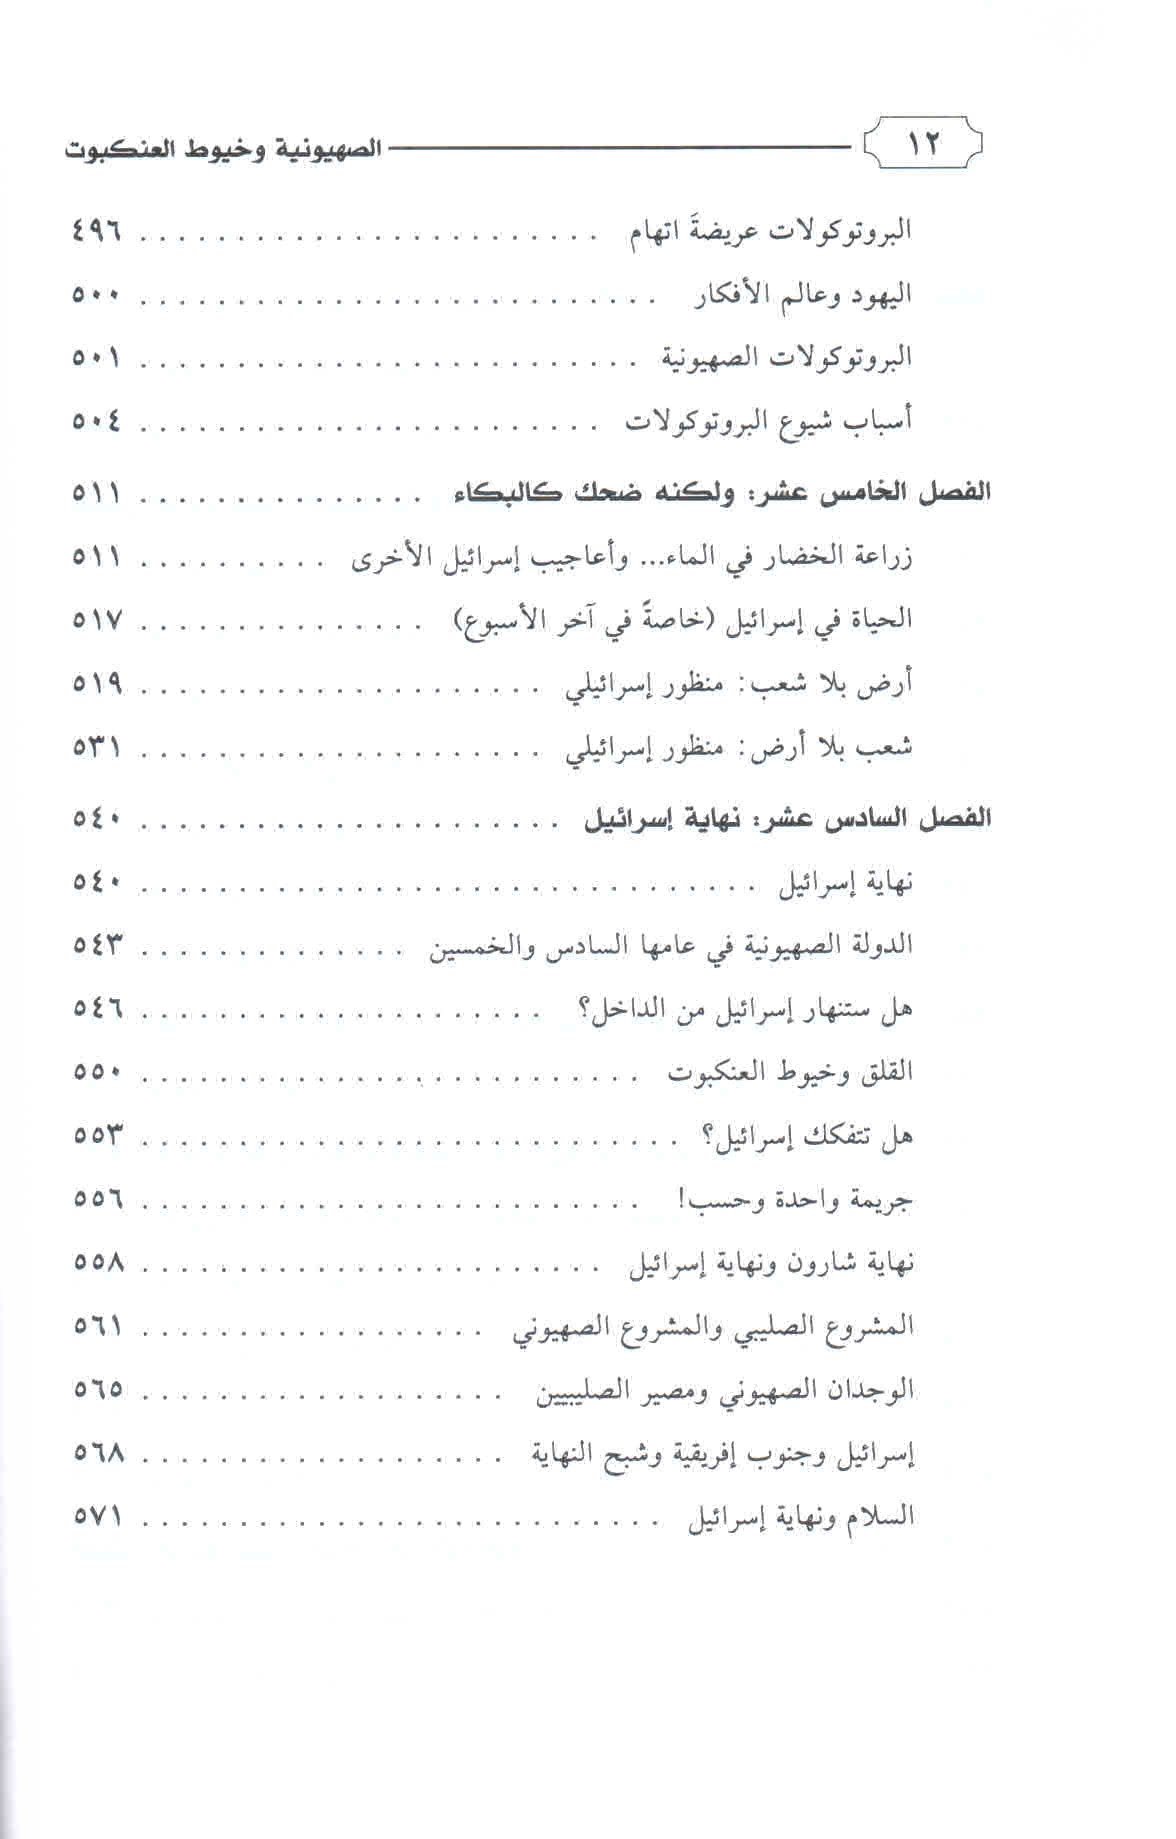 قائمة محتويات كتاب الصهيونية وخيوط العنكبوت ص. 12.